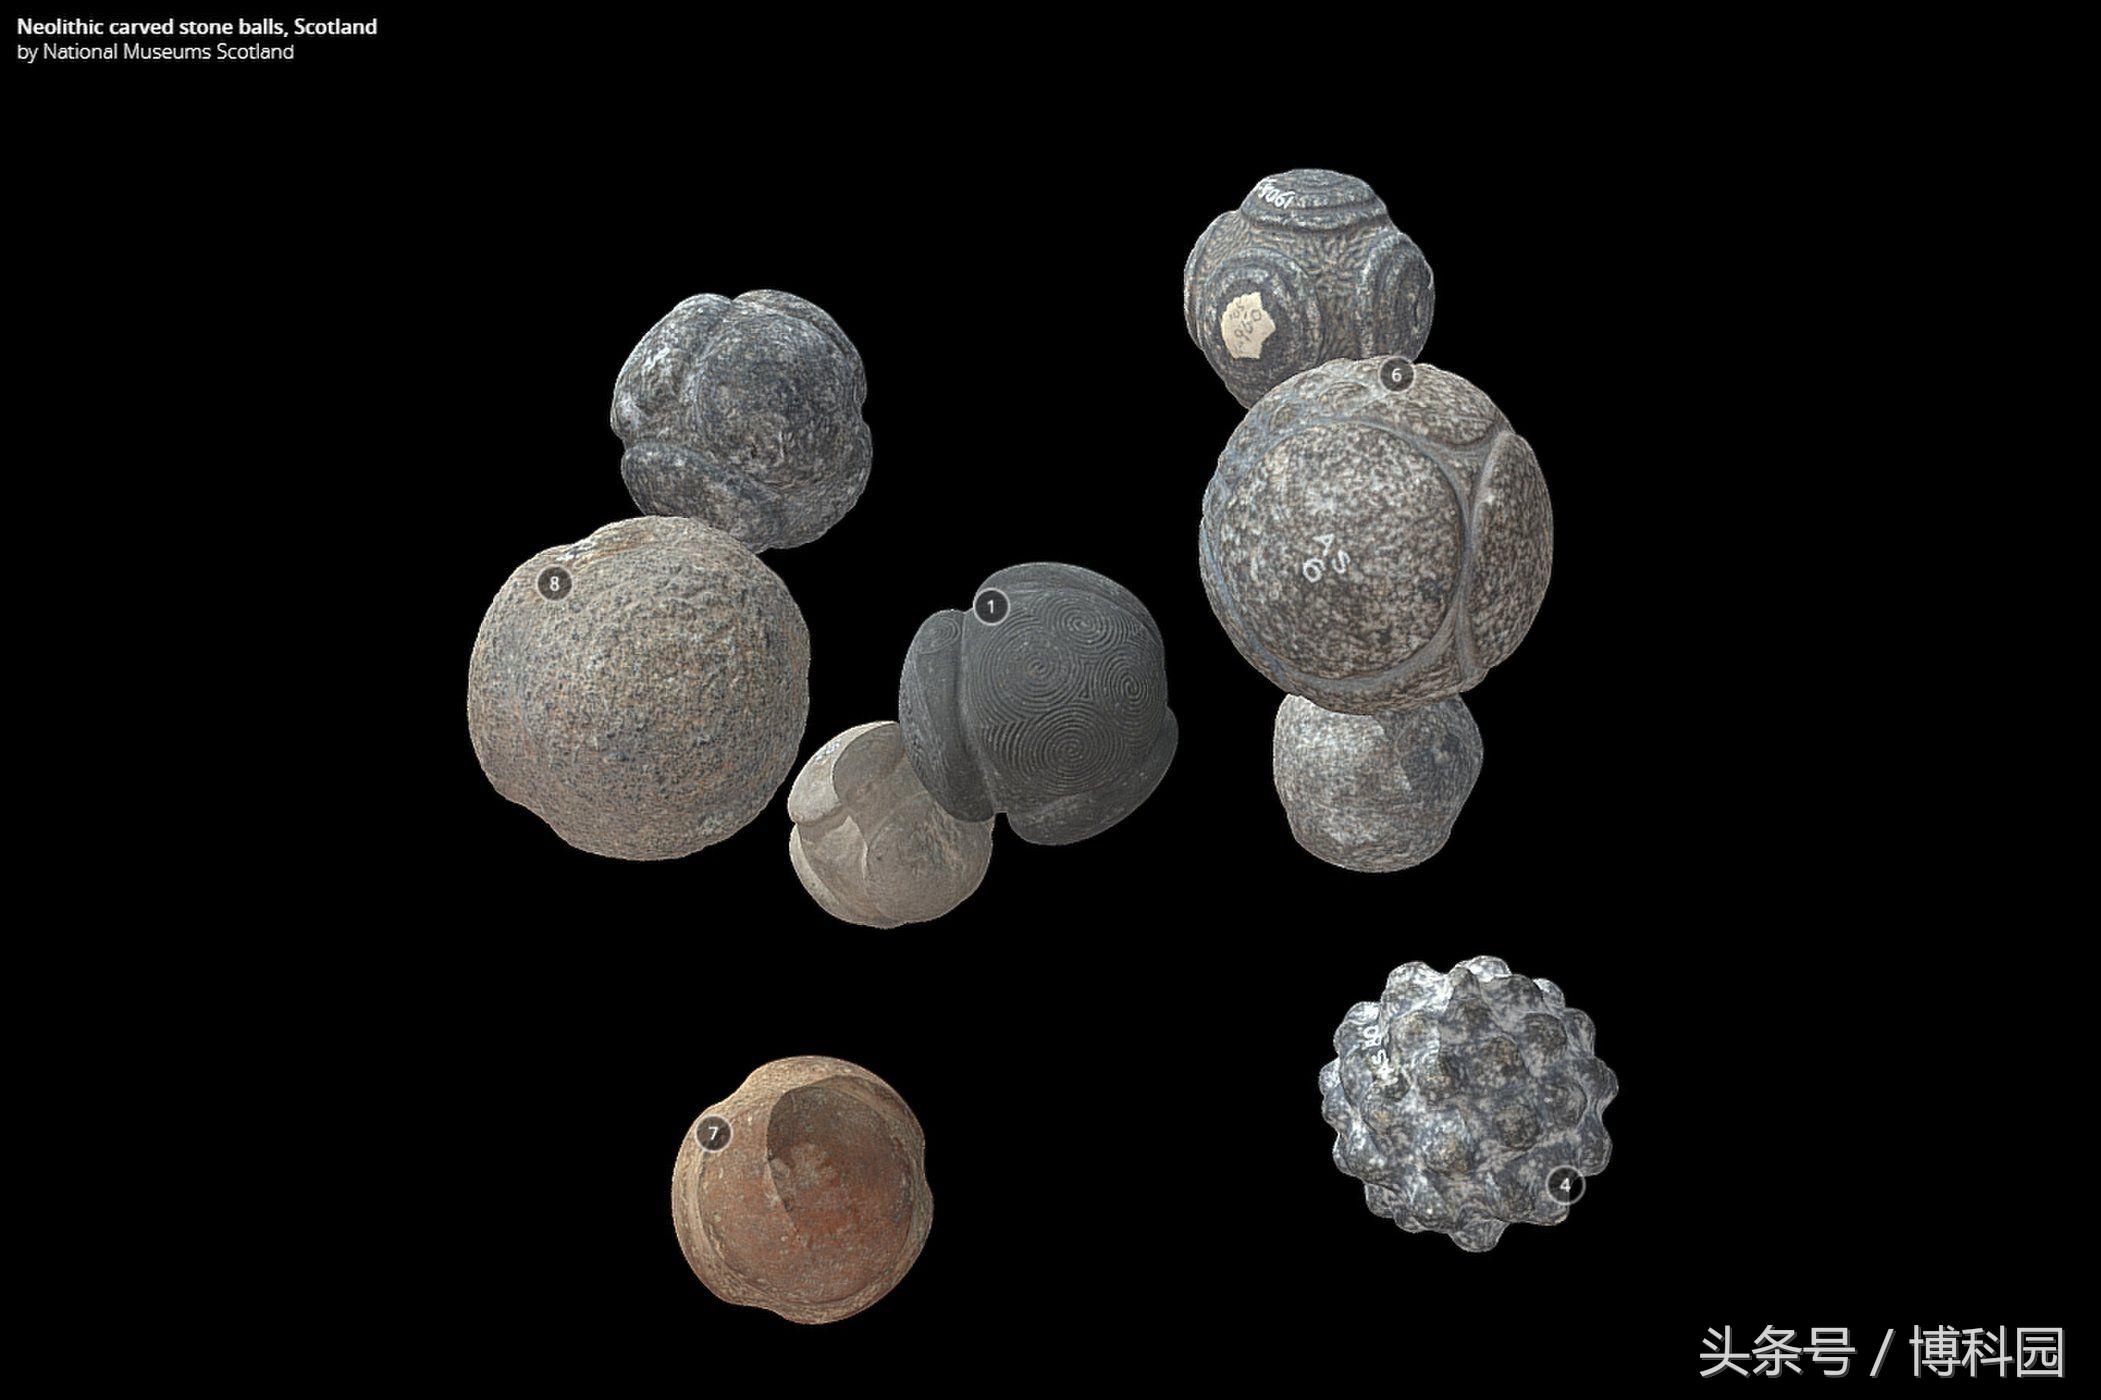 这些5000年前神秘的石球一直困扰着考古学家